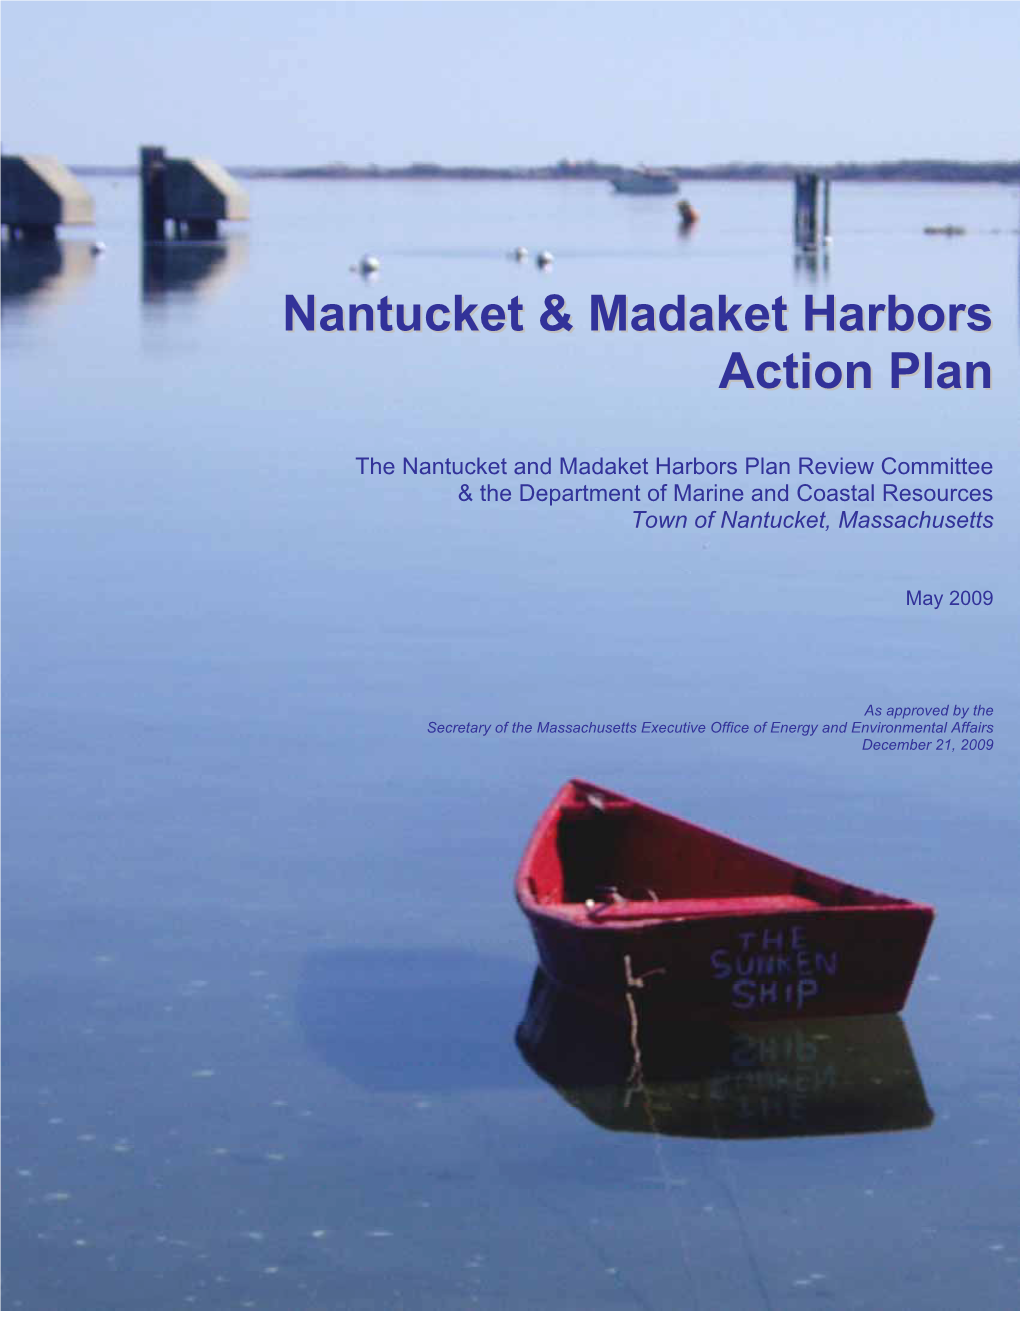 Nantucket and Madaket Harbors Action Plan (“Plan”) Dated May 2009